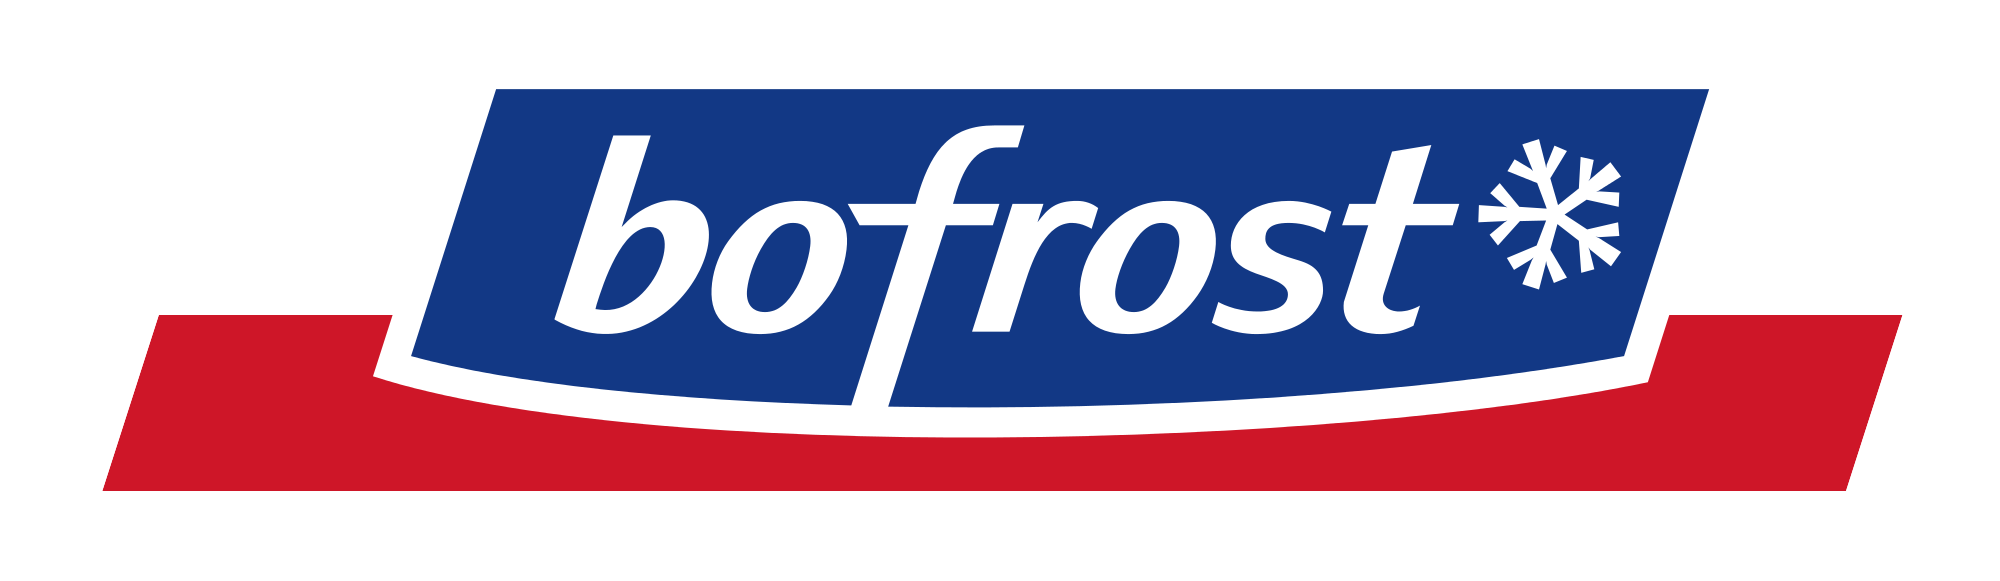 Promotion Bofrost : Actions et Promos (de la semaine) chez Bofrost